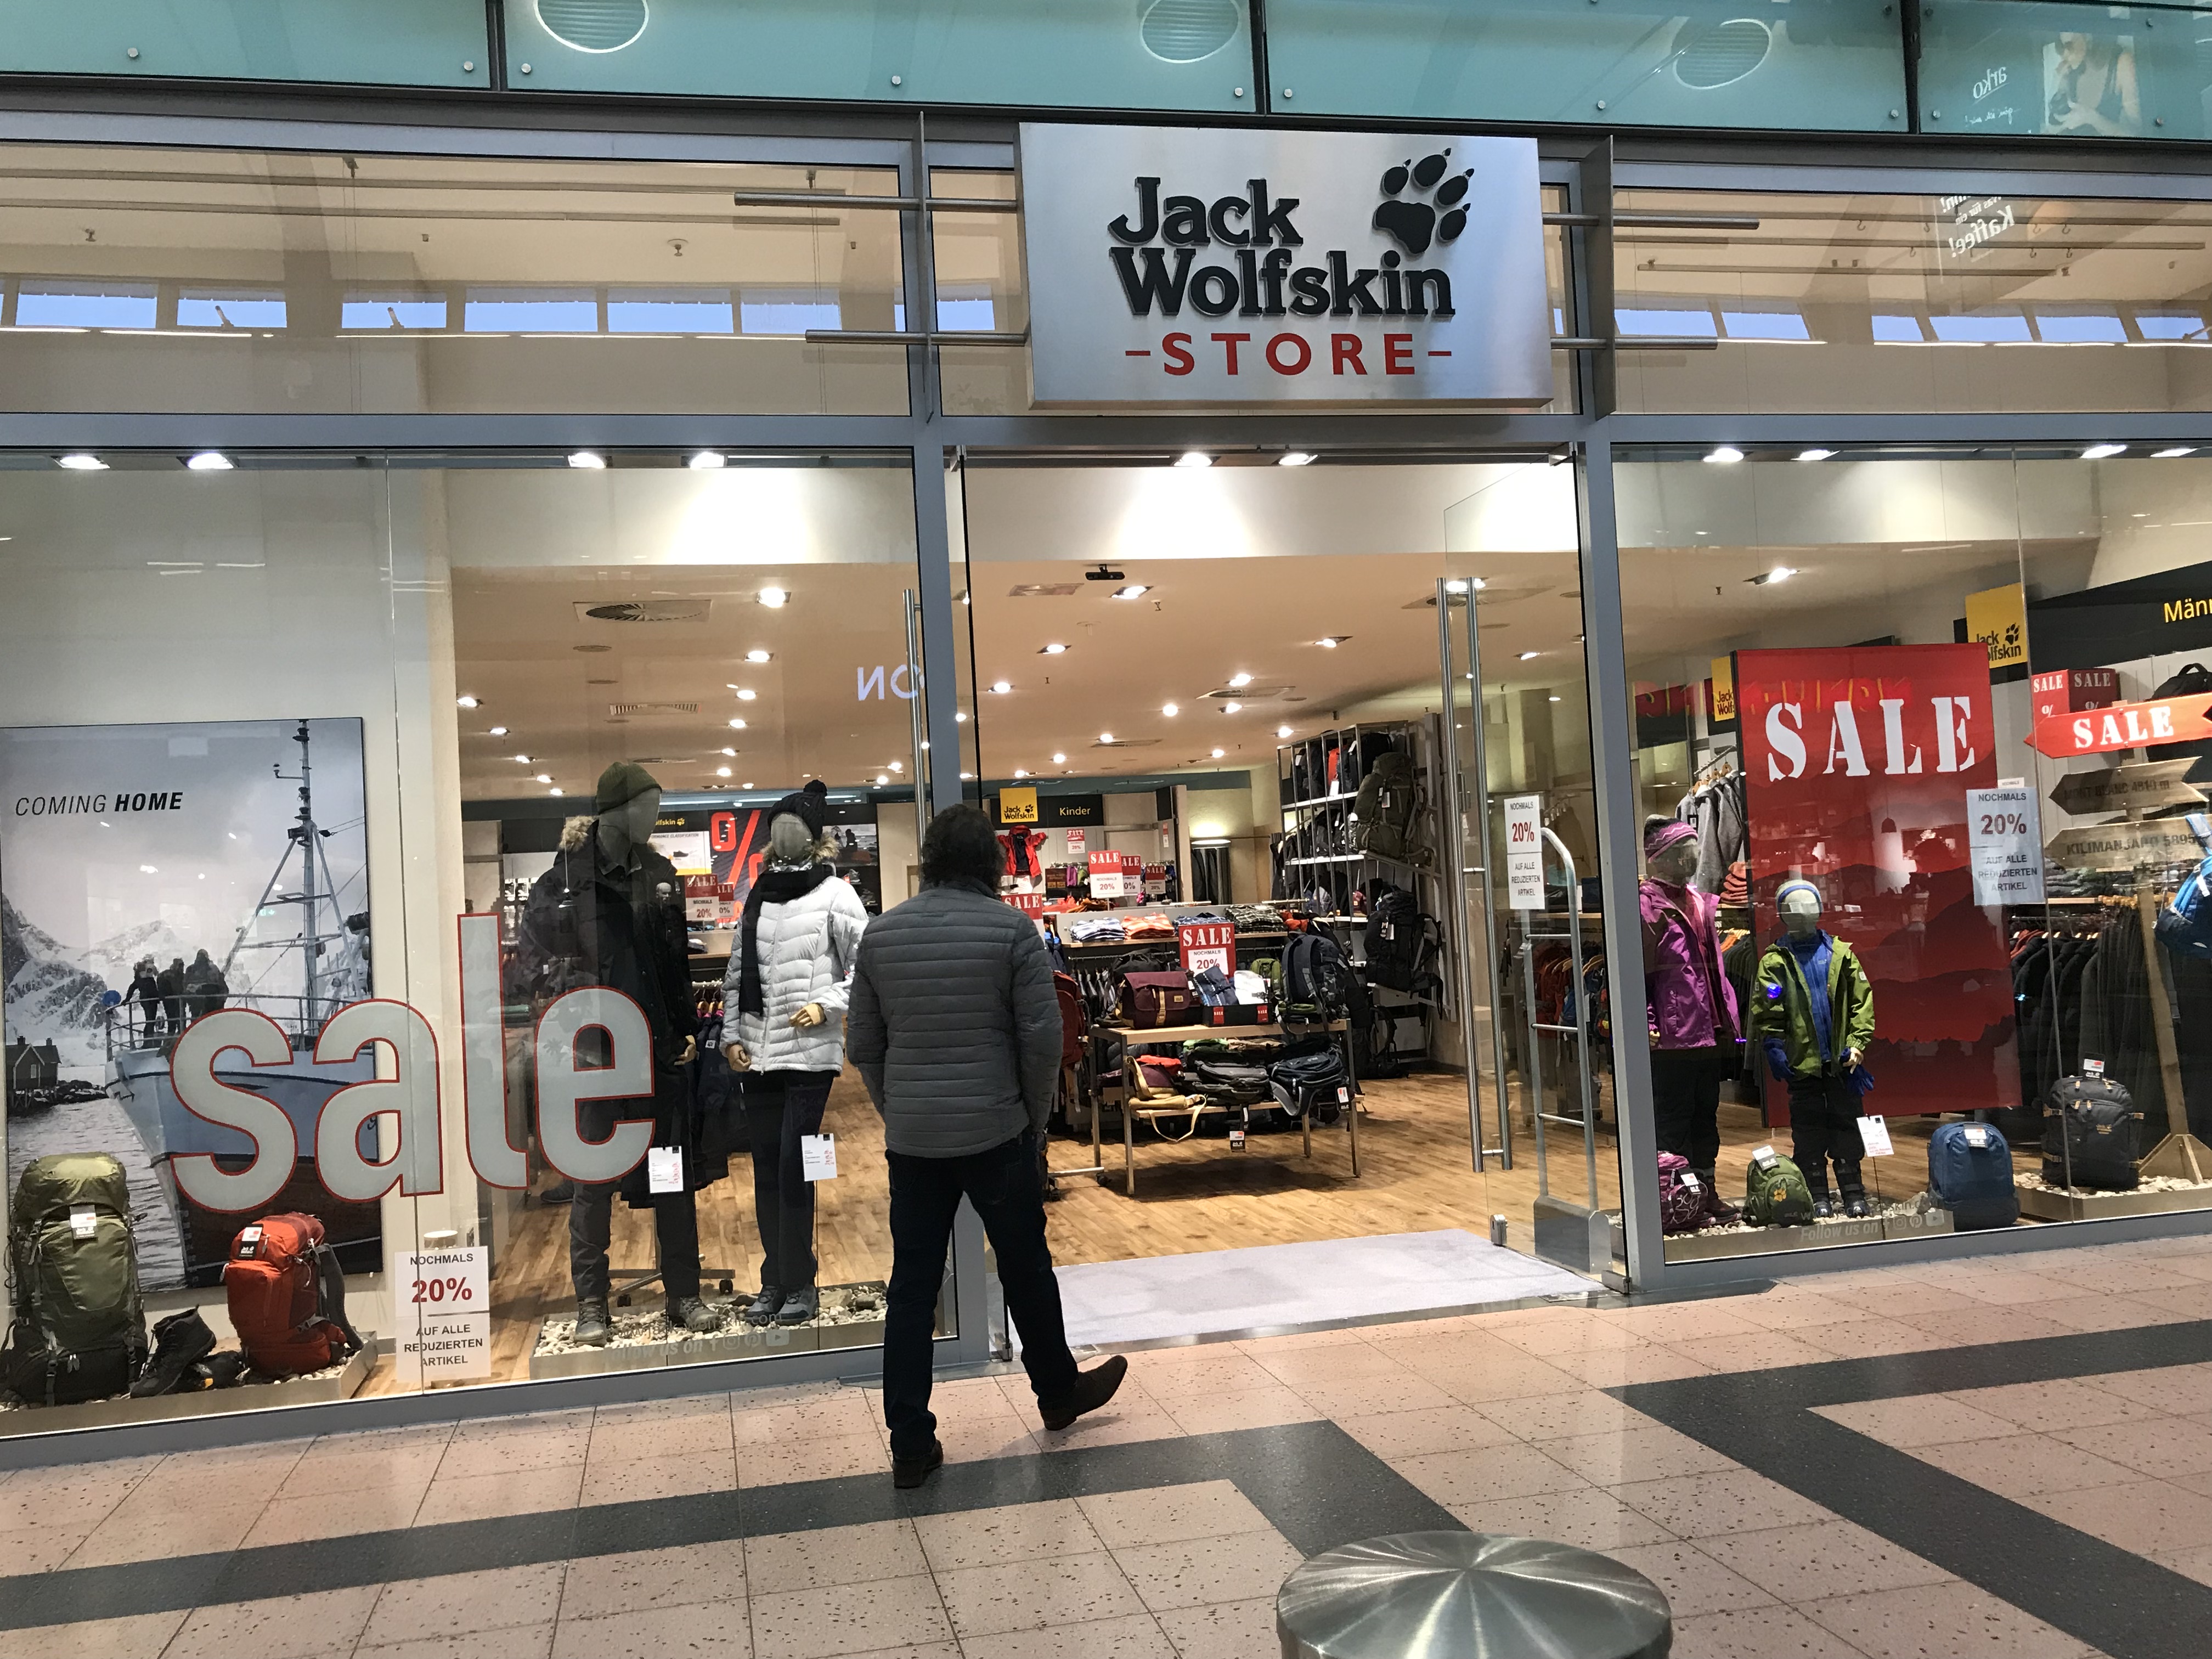 Bild 1 Jack Wolfskin Store in Bad Oeynhausen